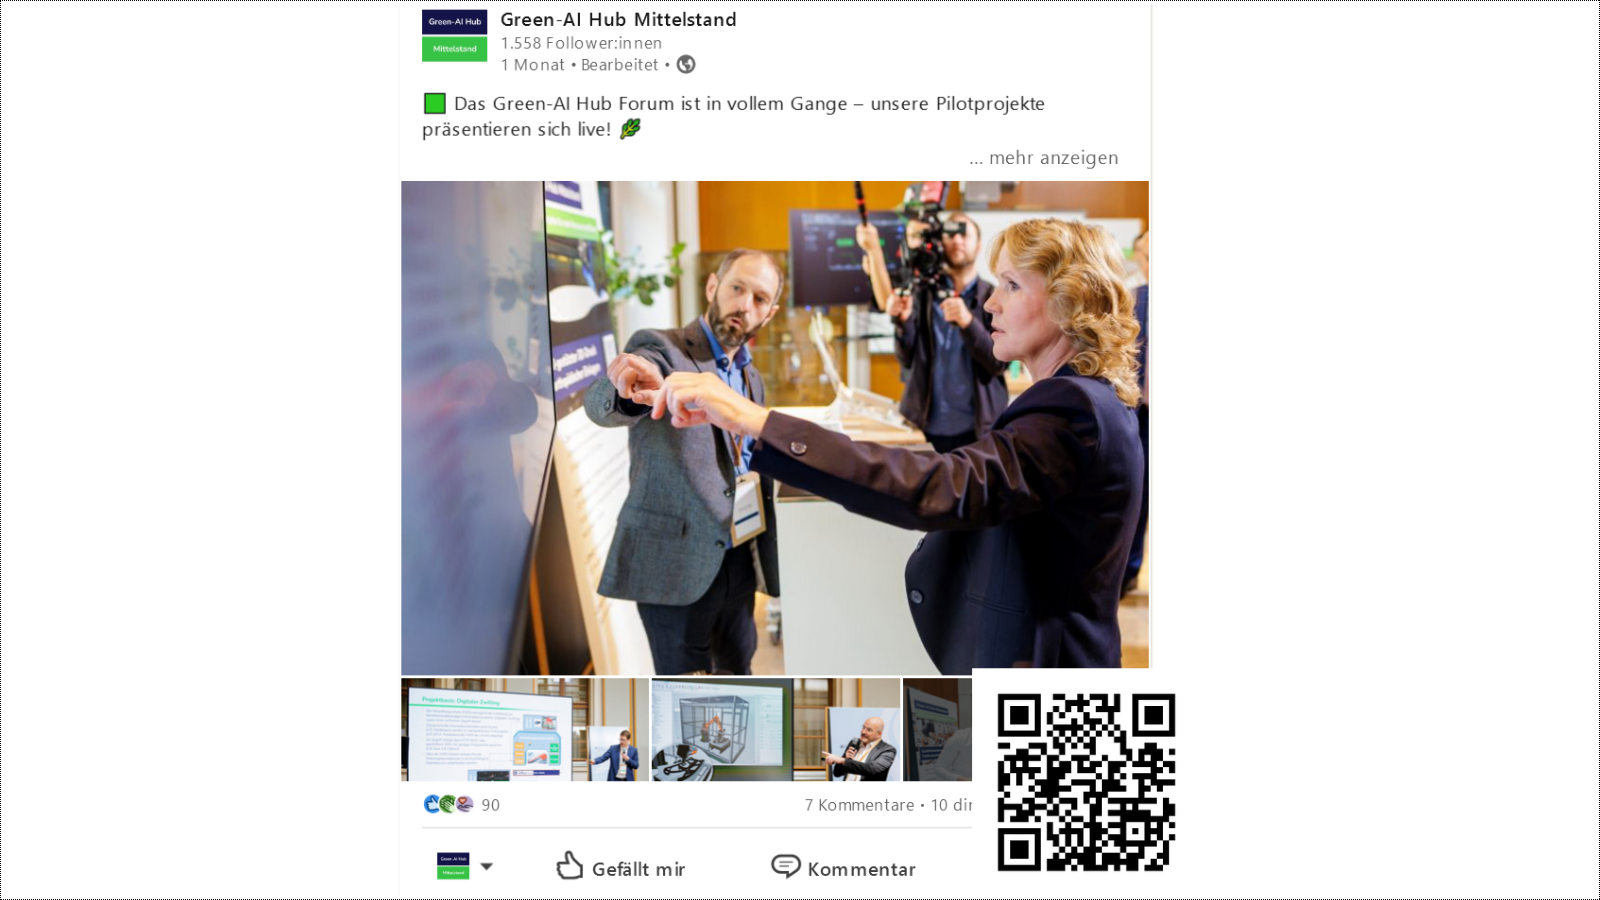 Ein LinkedIn Post des Green-AI Hub Mittelstand, in welchem Bundesumweltministerin Steffi Lemke und verschiedene KI-Lösungen zu sehen sind.